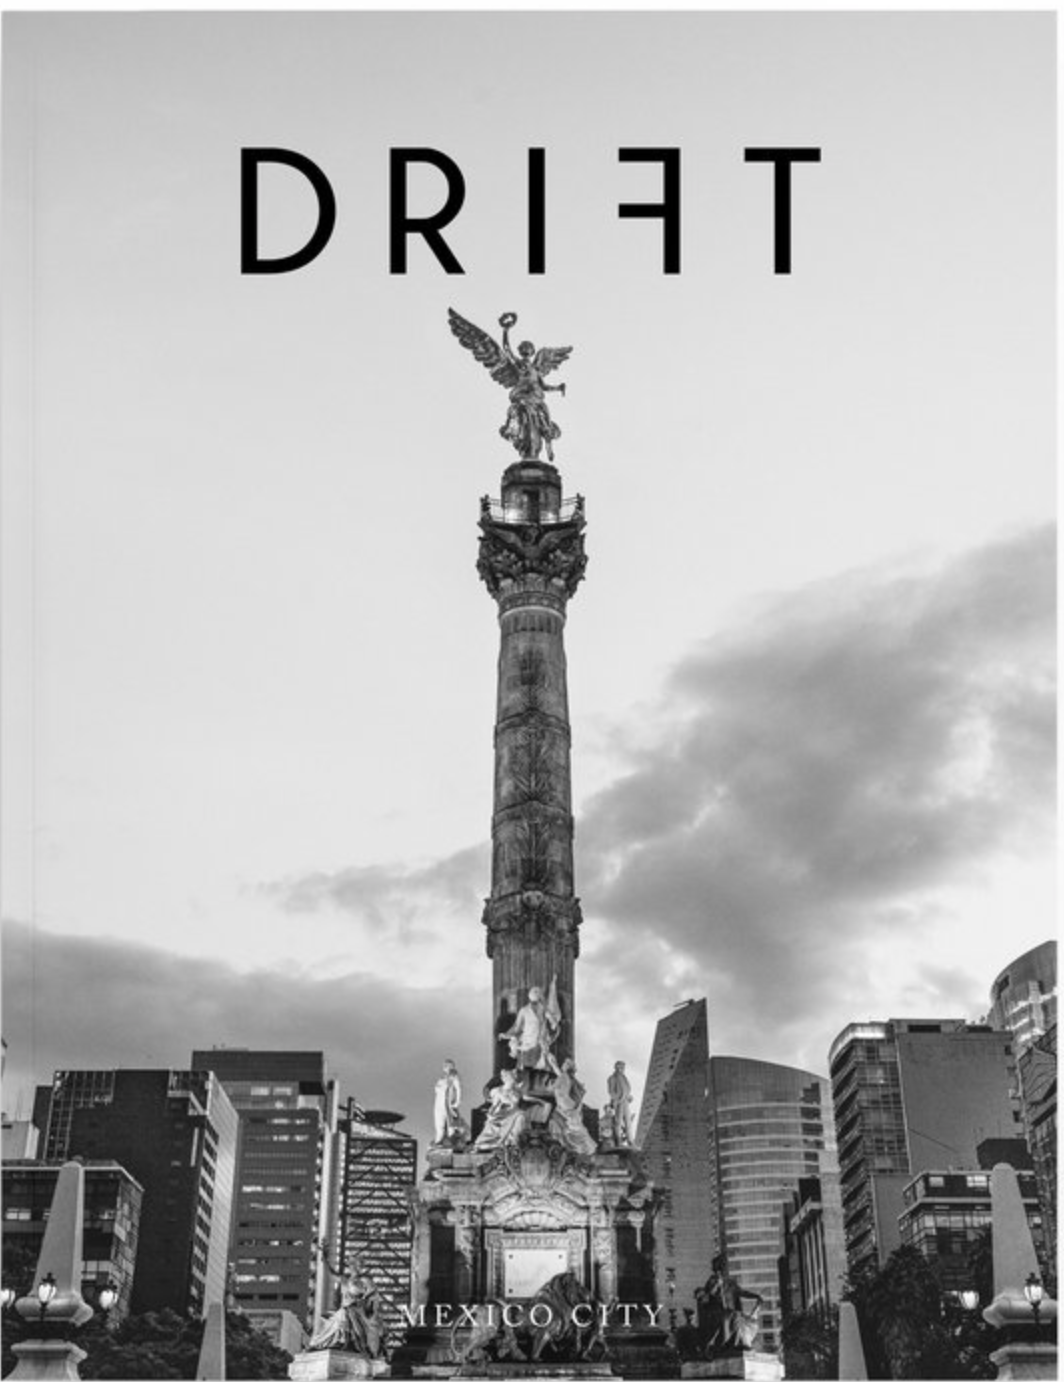 Drift Magazine - Volume 6